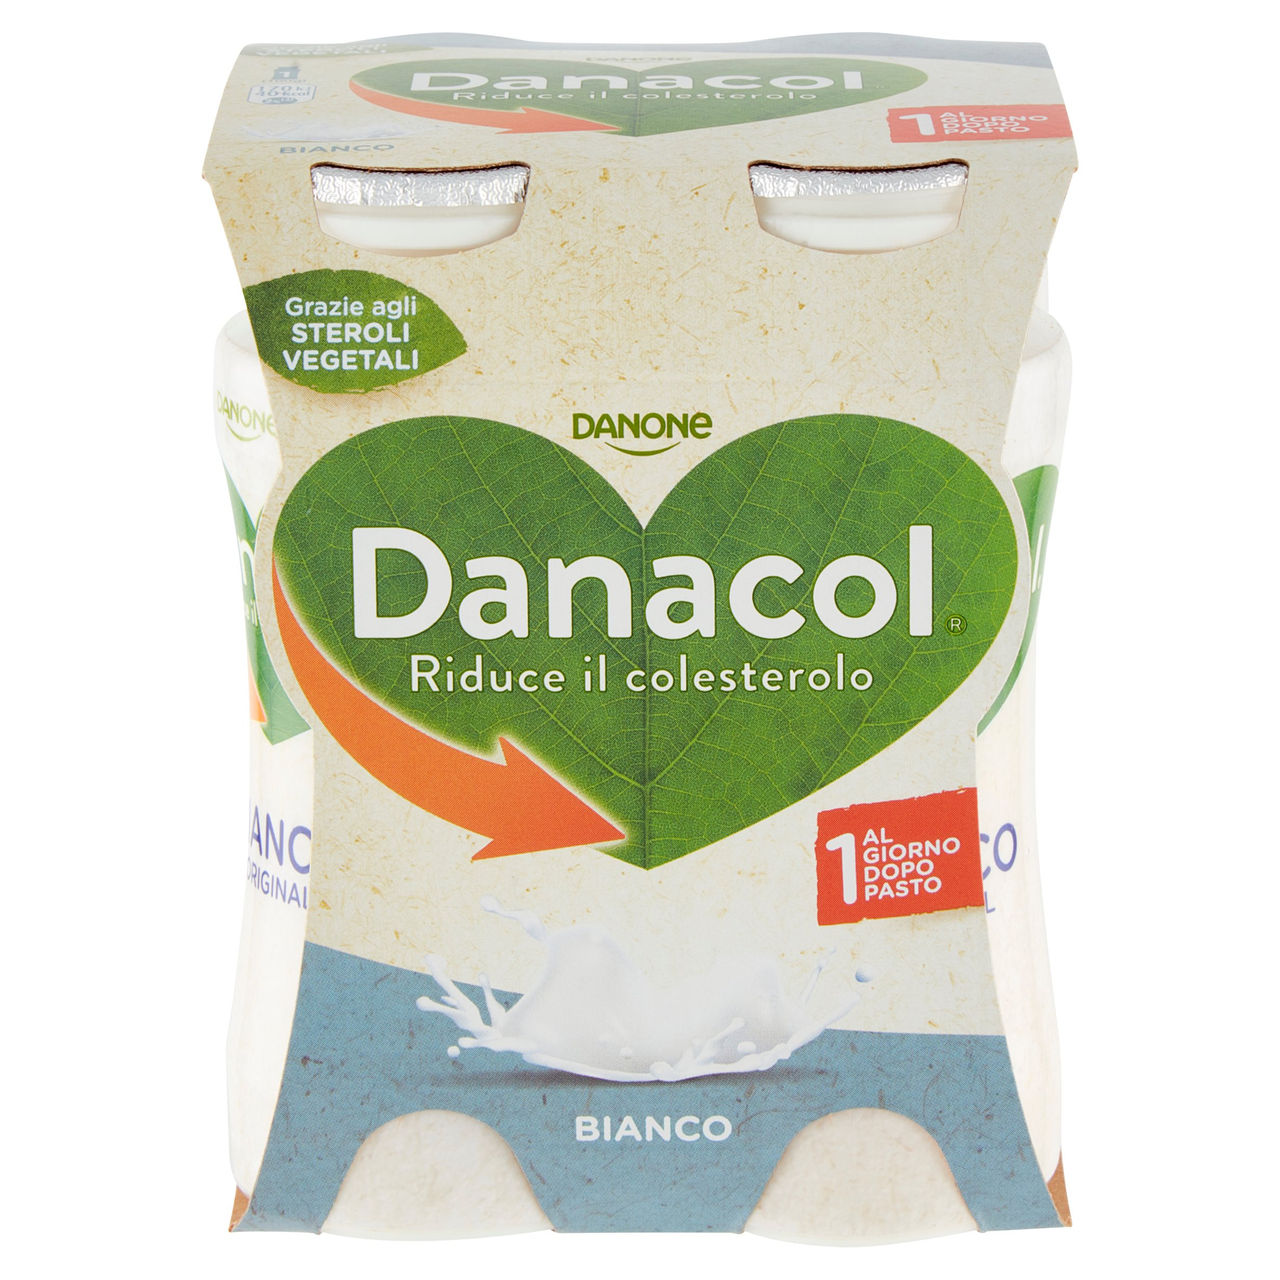 Danacol Bianco 4 x 100 g